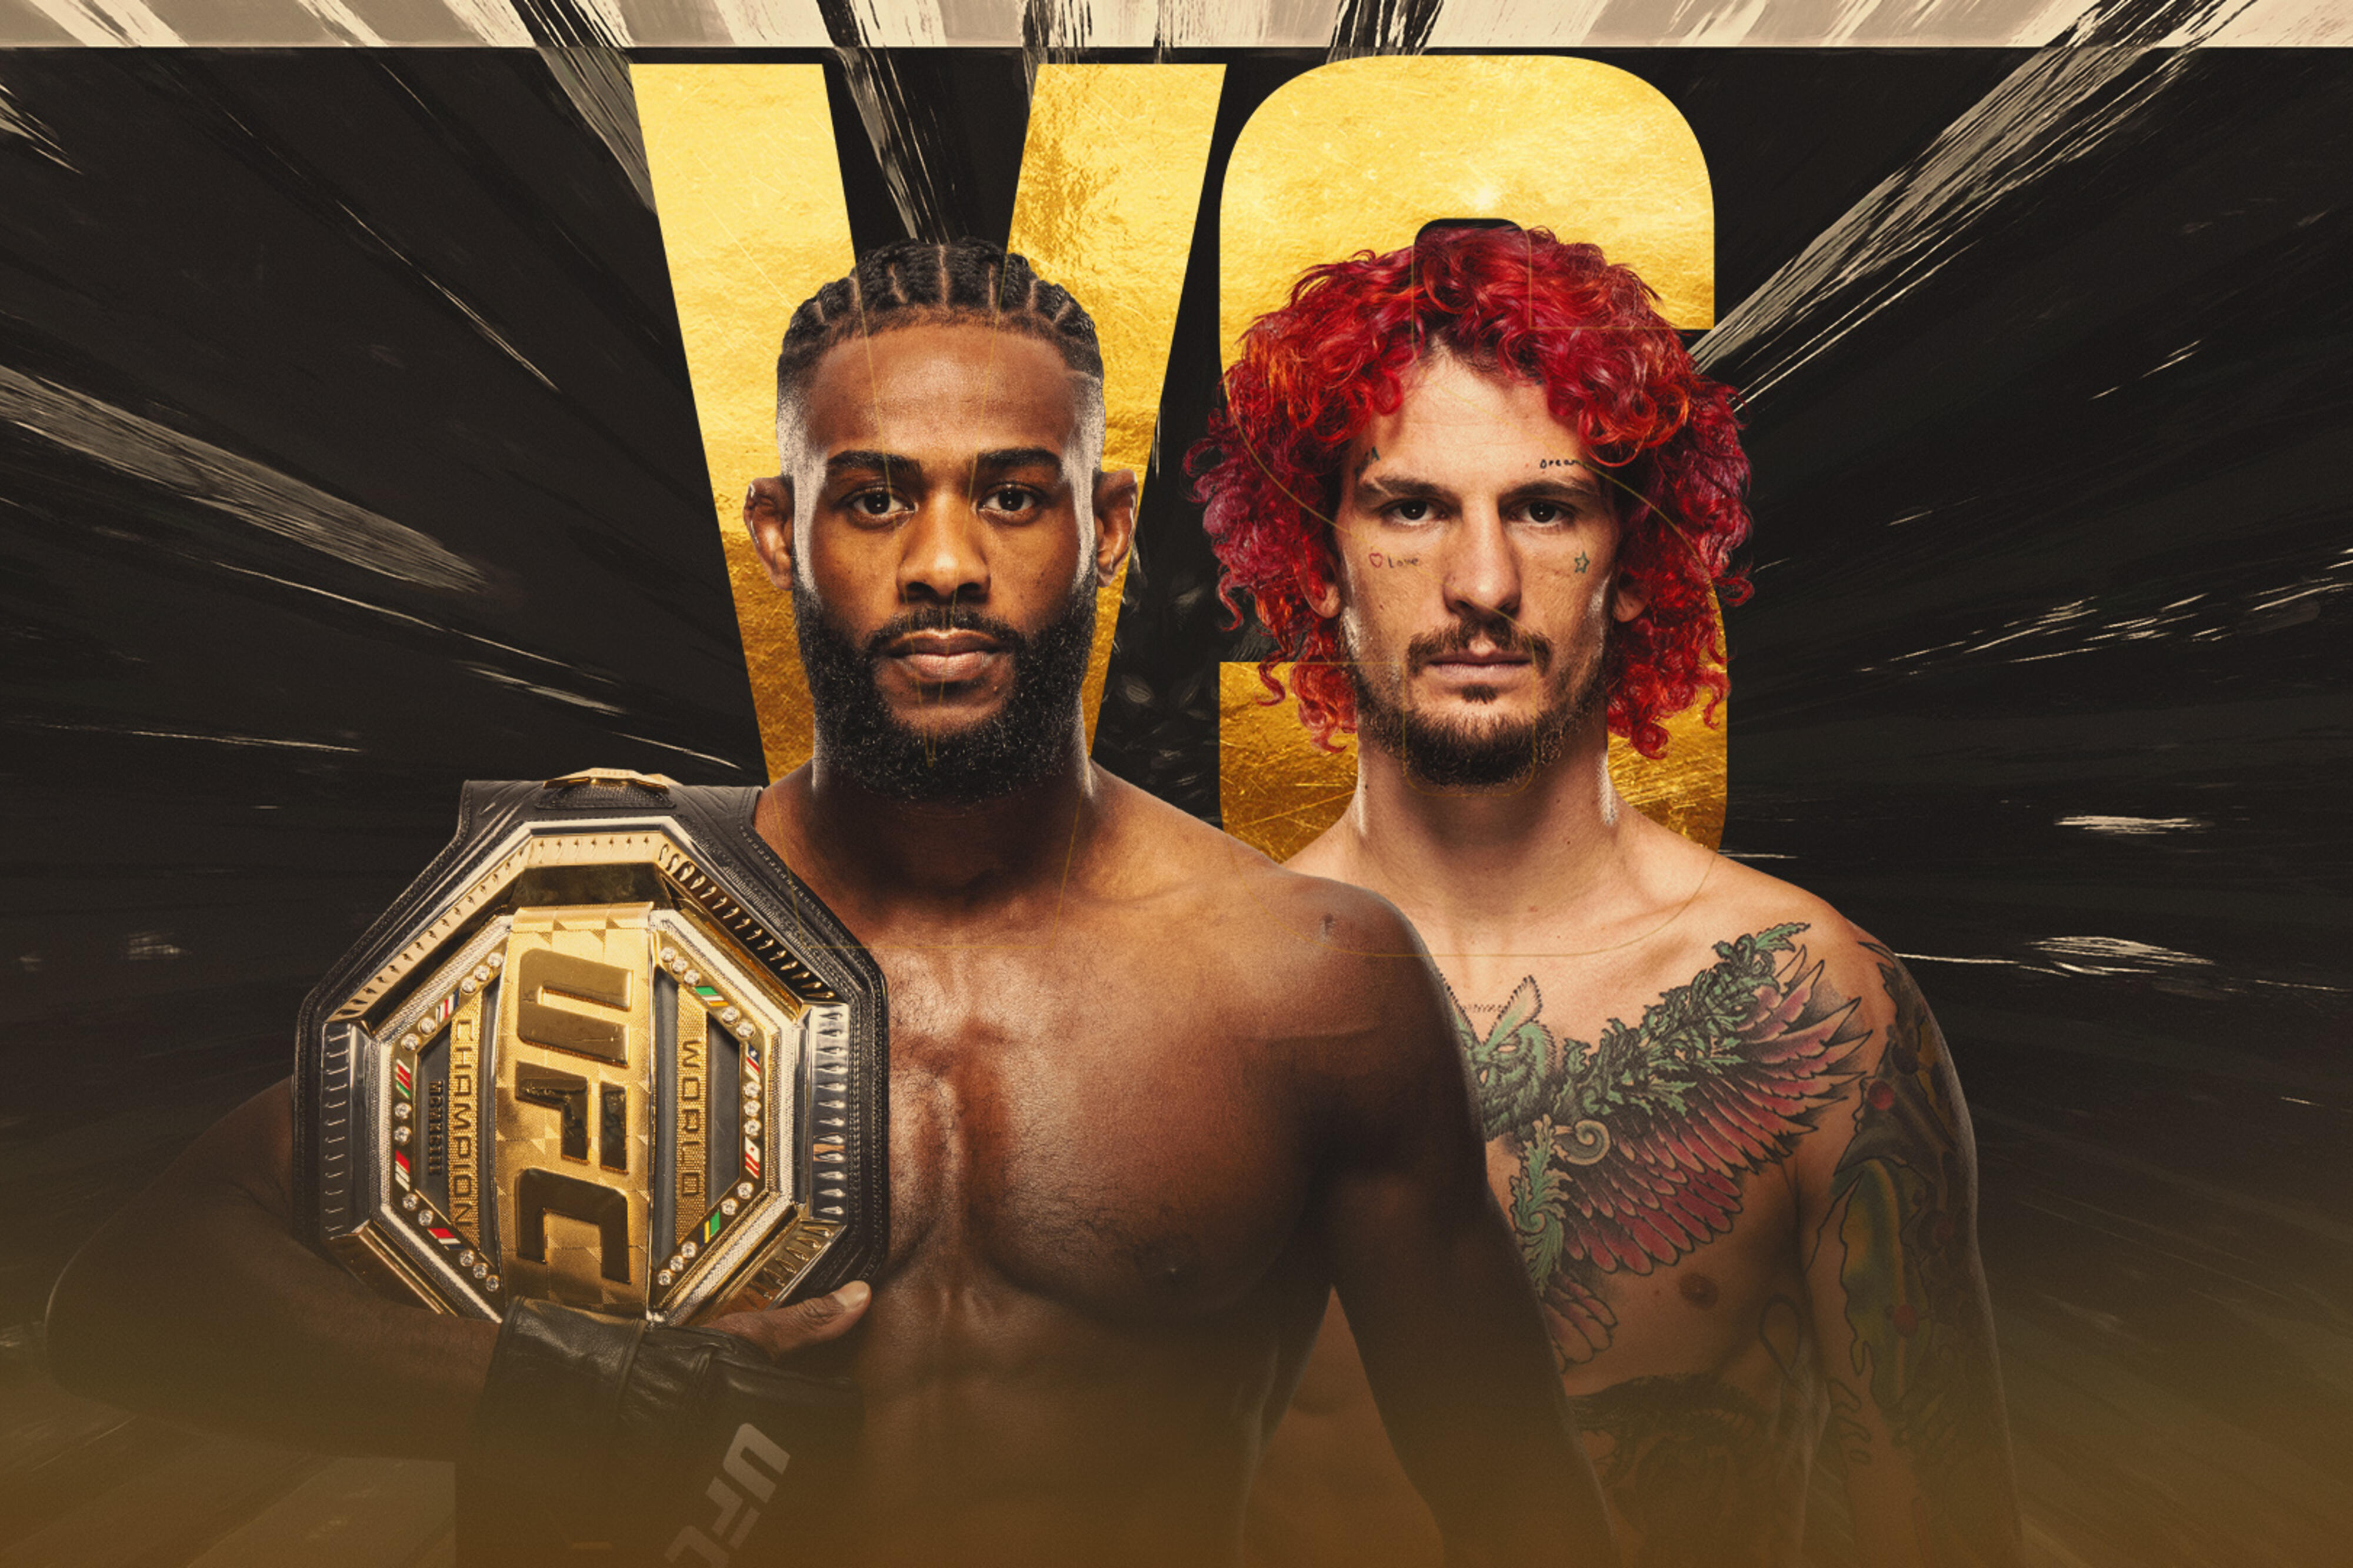 UFC 292 - Boston - Poster et affiche